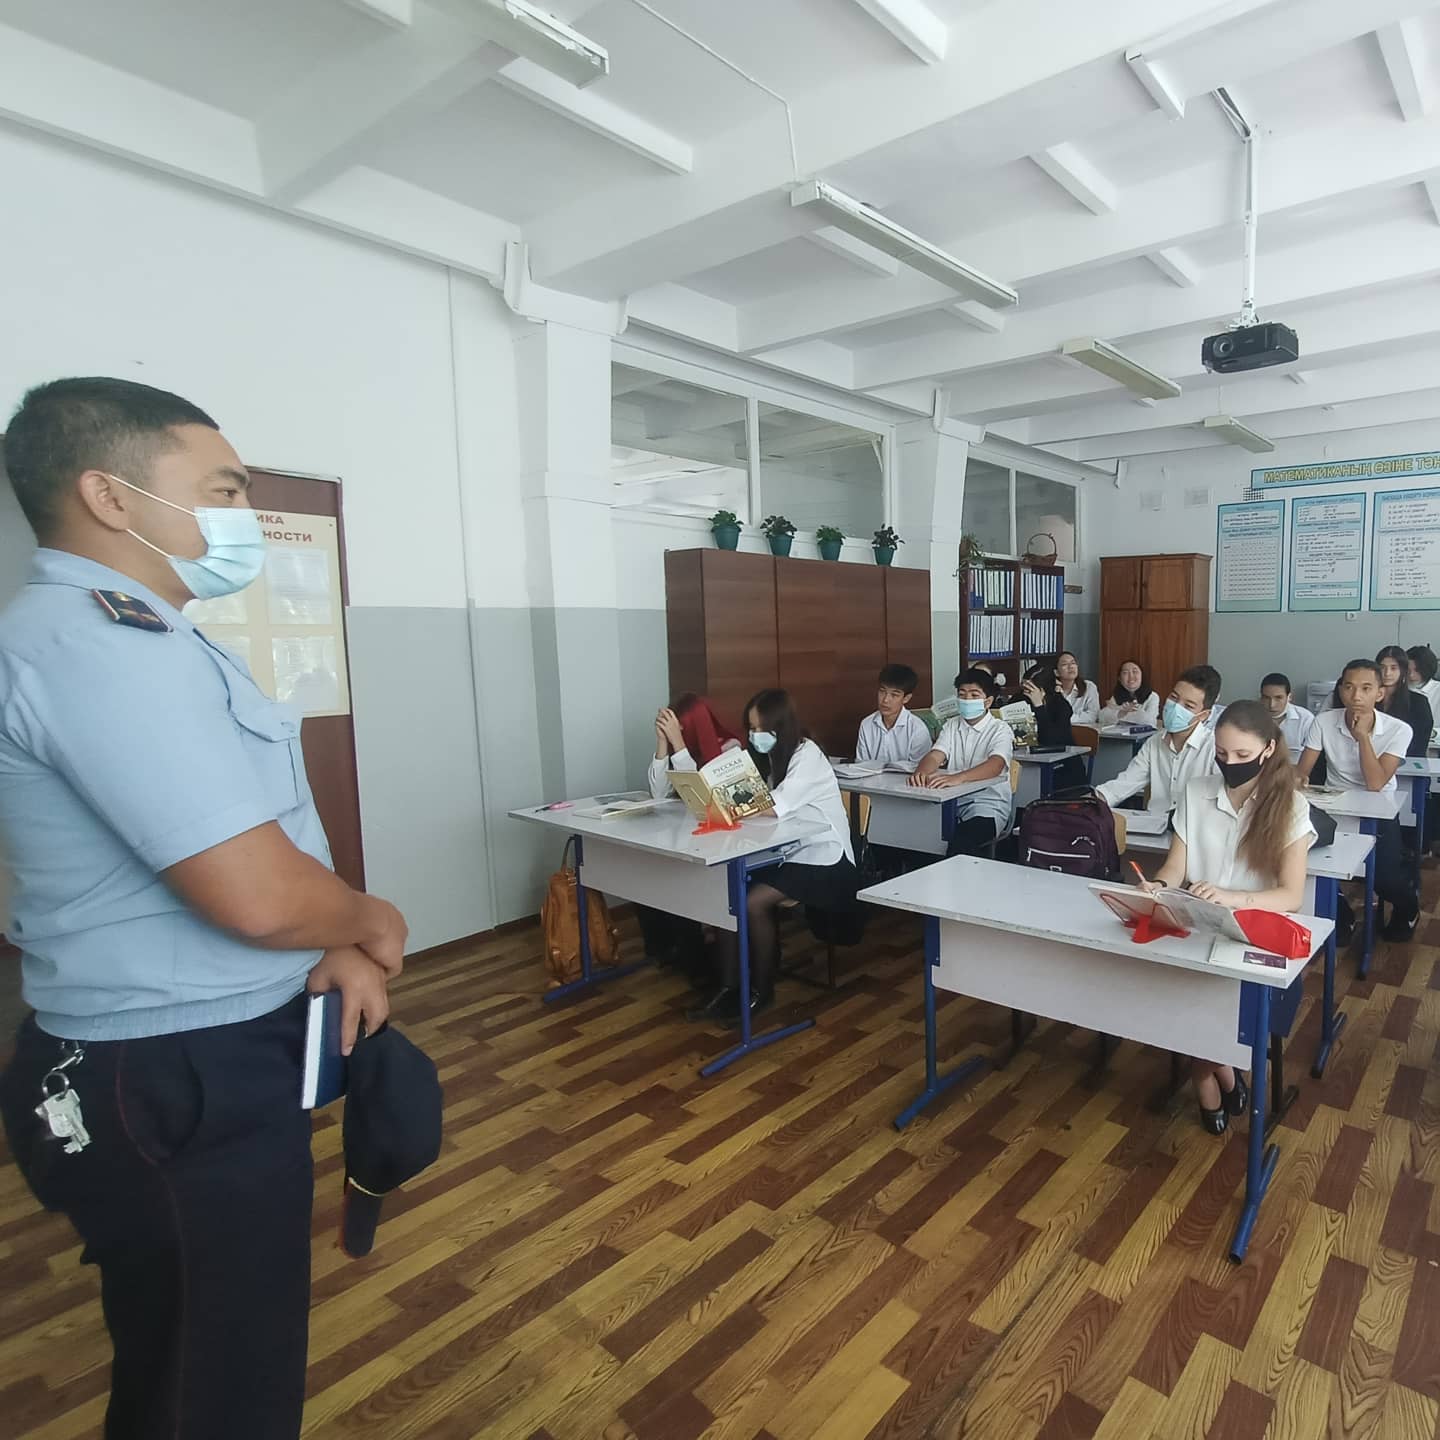 Инспектор школы провел разъяснительную беседу на темы: административная ответственность несовершеннолетних